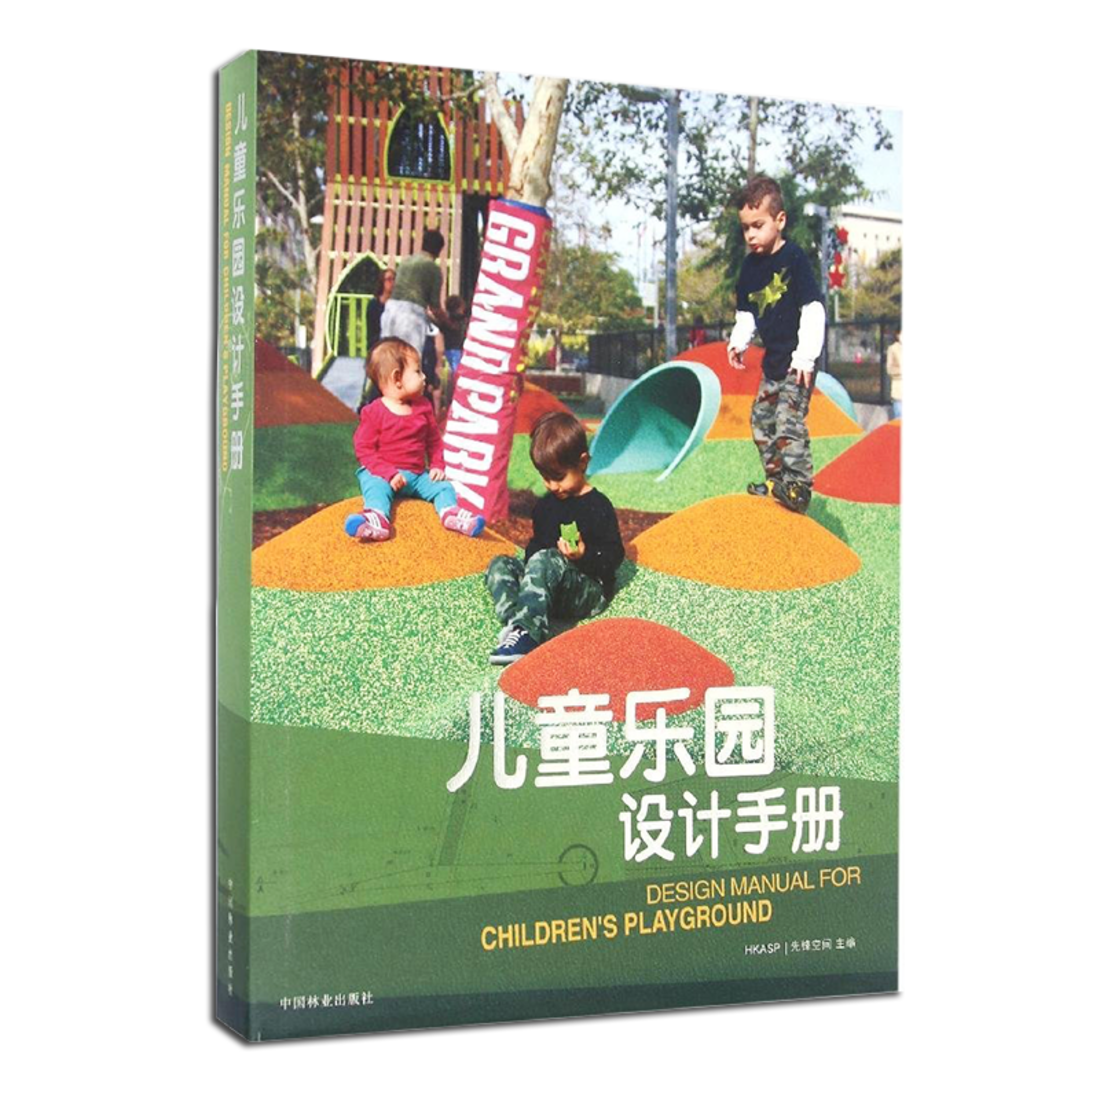 《儿童乐园设计手册》